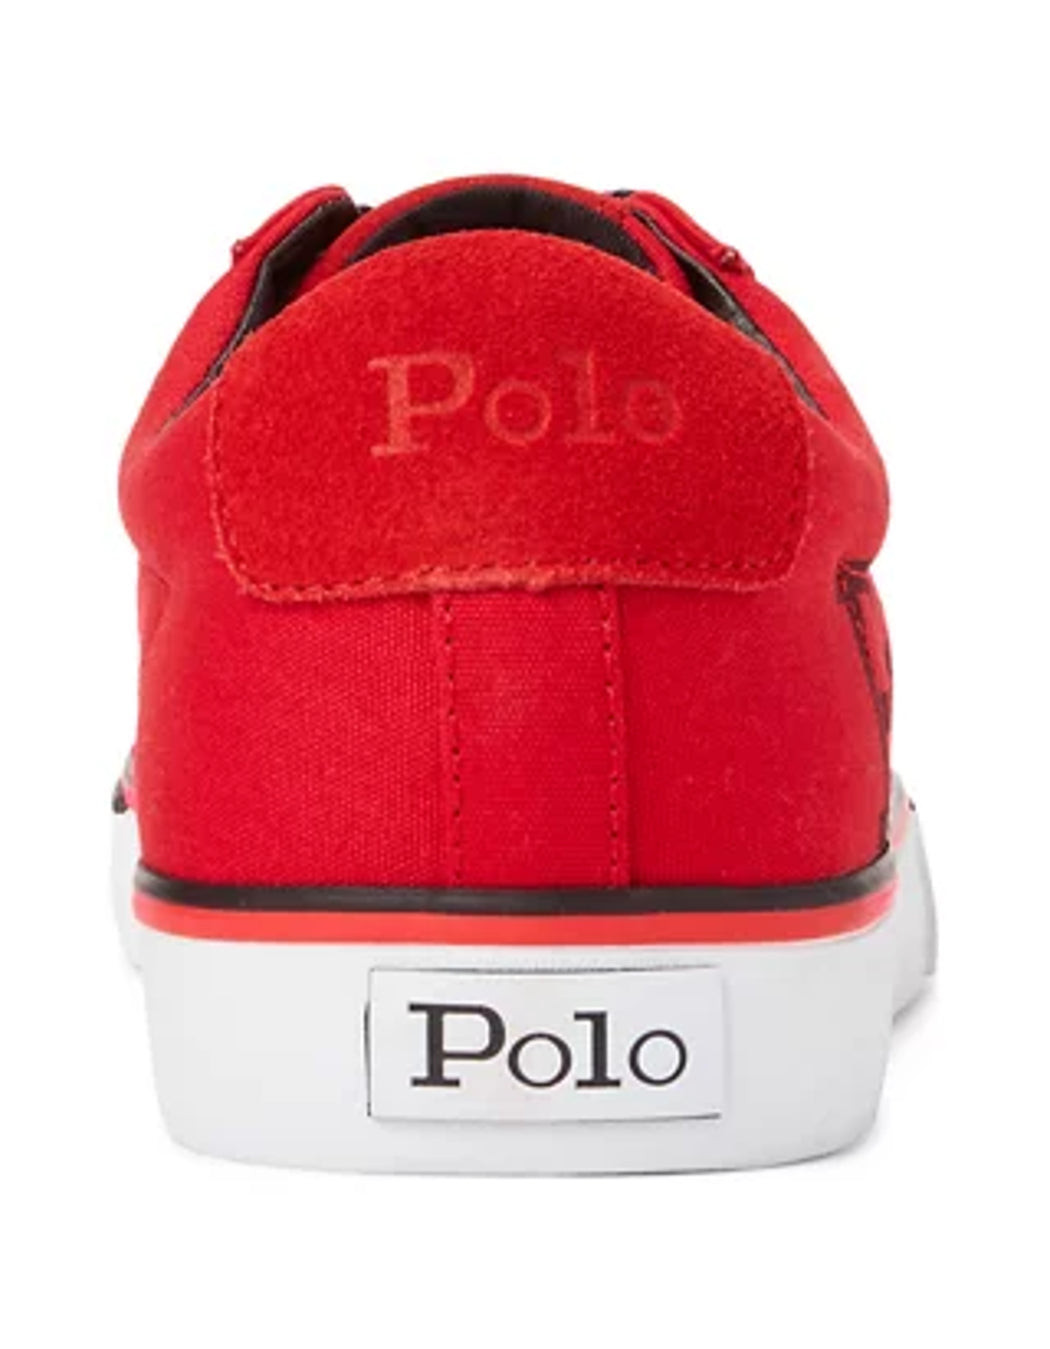 Polo Ralph Lauren Mens Shoes